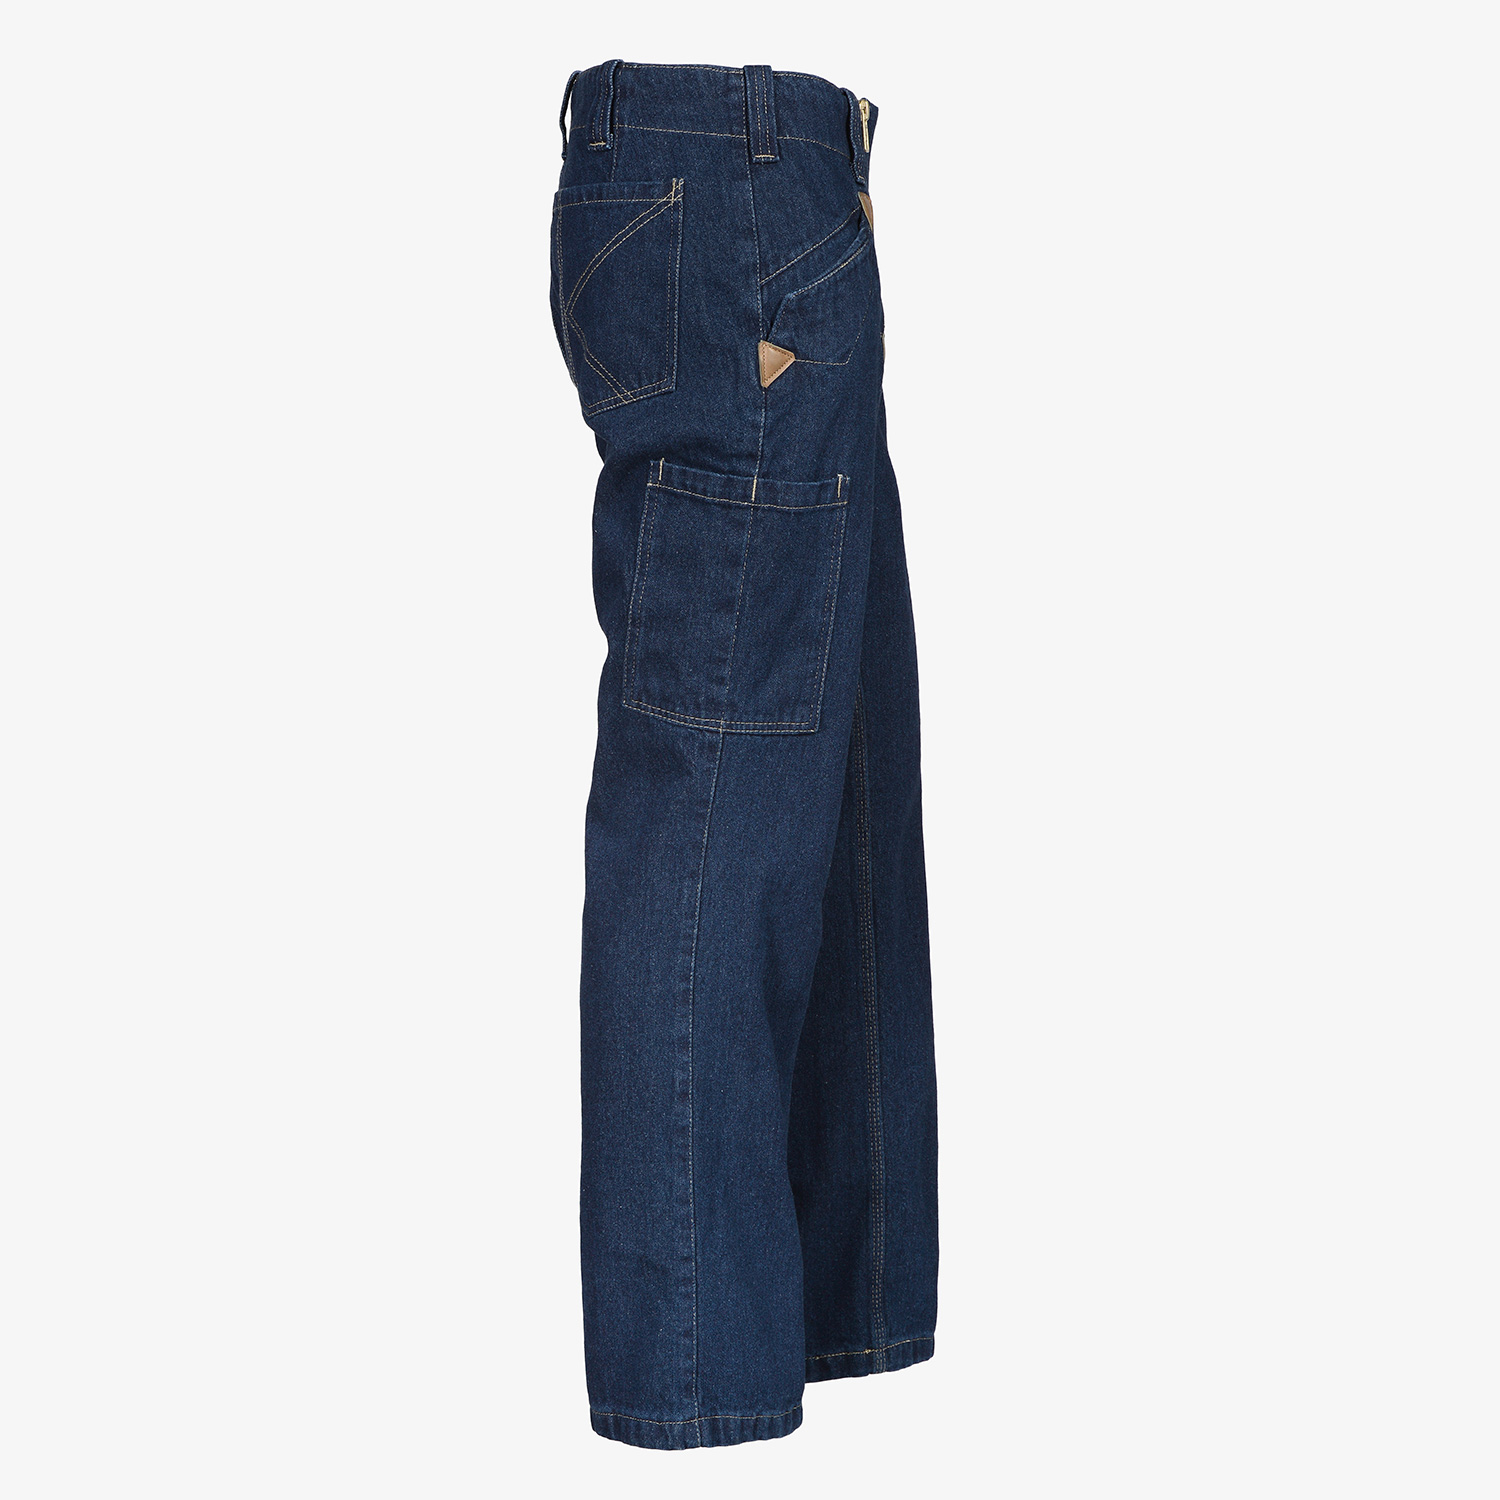 KRÄHE guild jeans without bell bottom